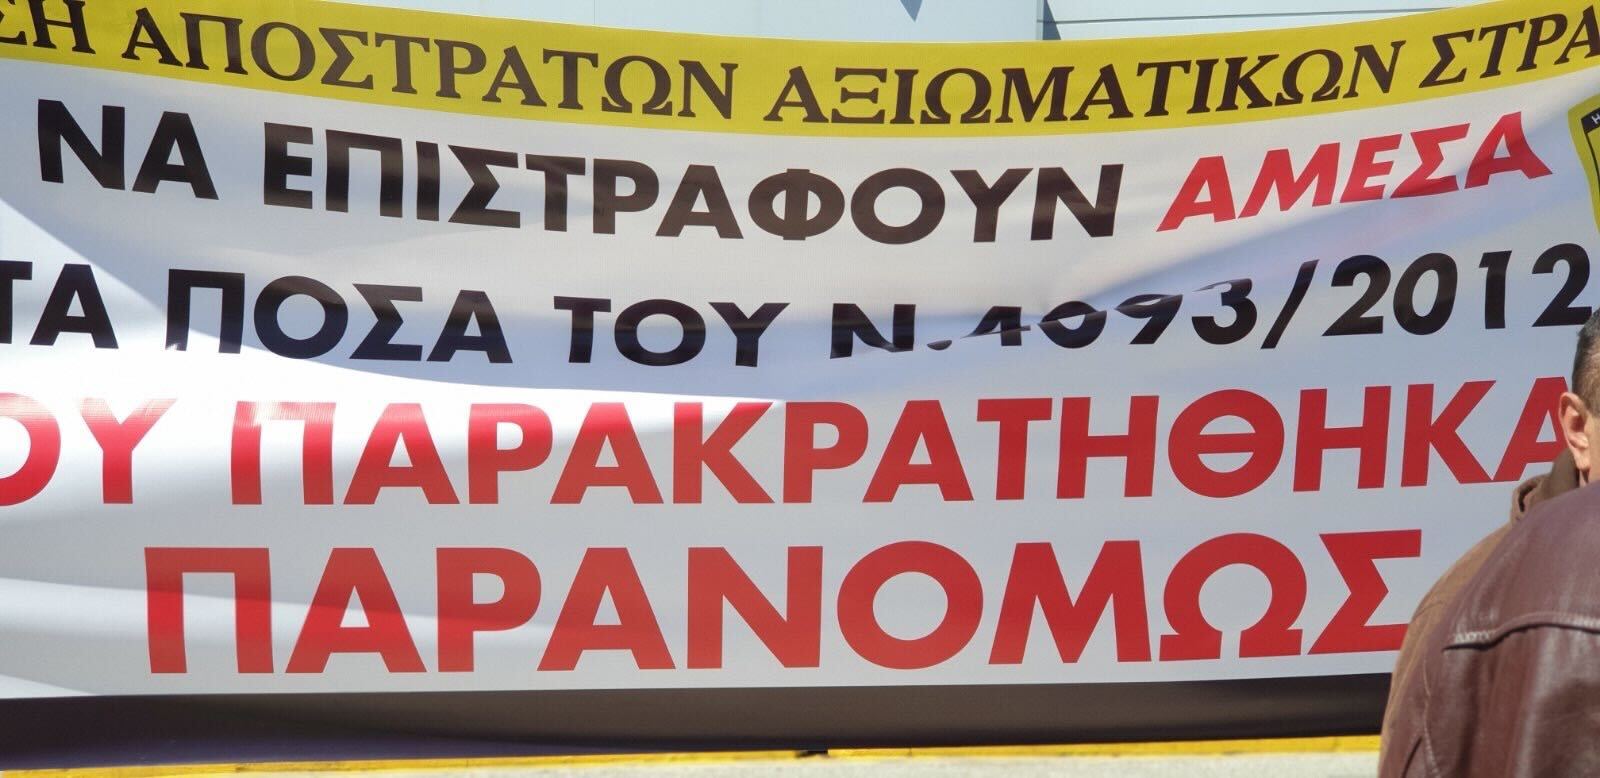 Μεγάλη συγκέντρωση διαμαρτυρίας για την οικονομική καταστροφή του ΜΤΣ και των συντάξεων από την κυβέρνηση Μητσοτάκη